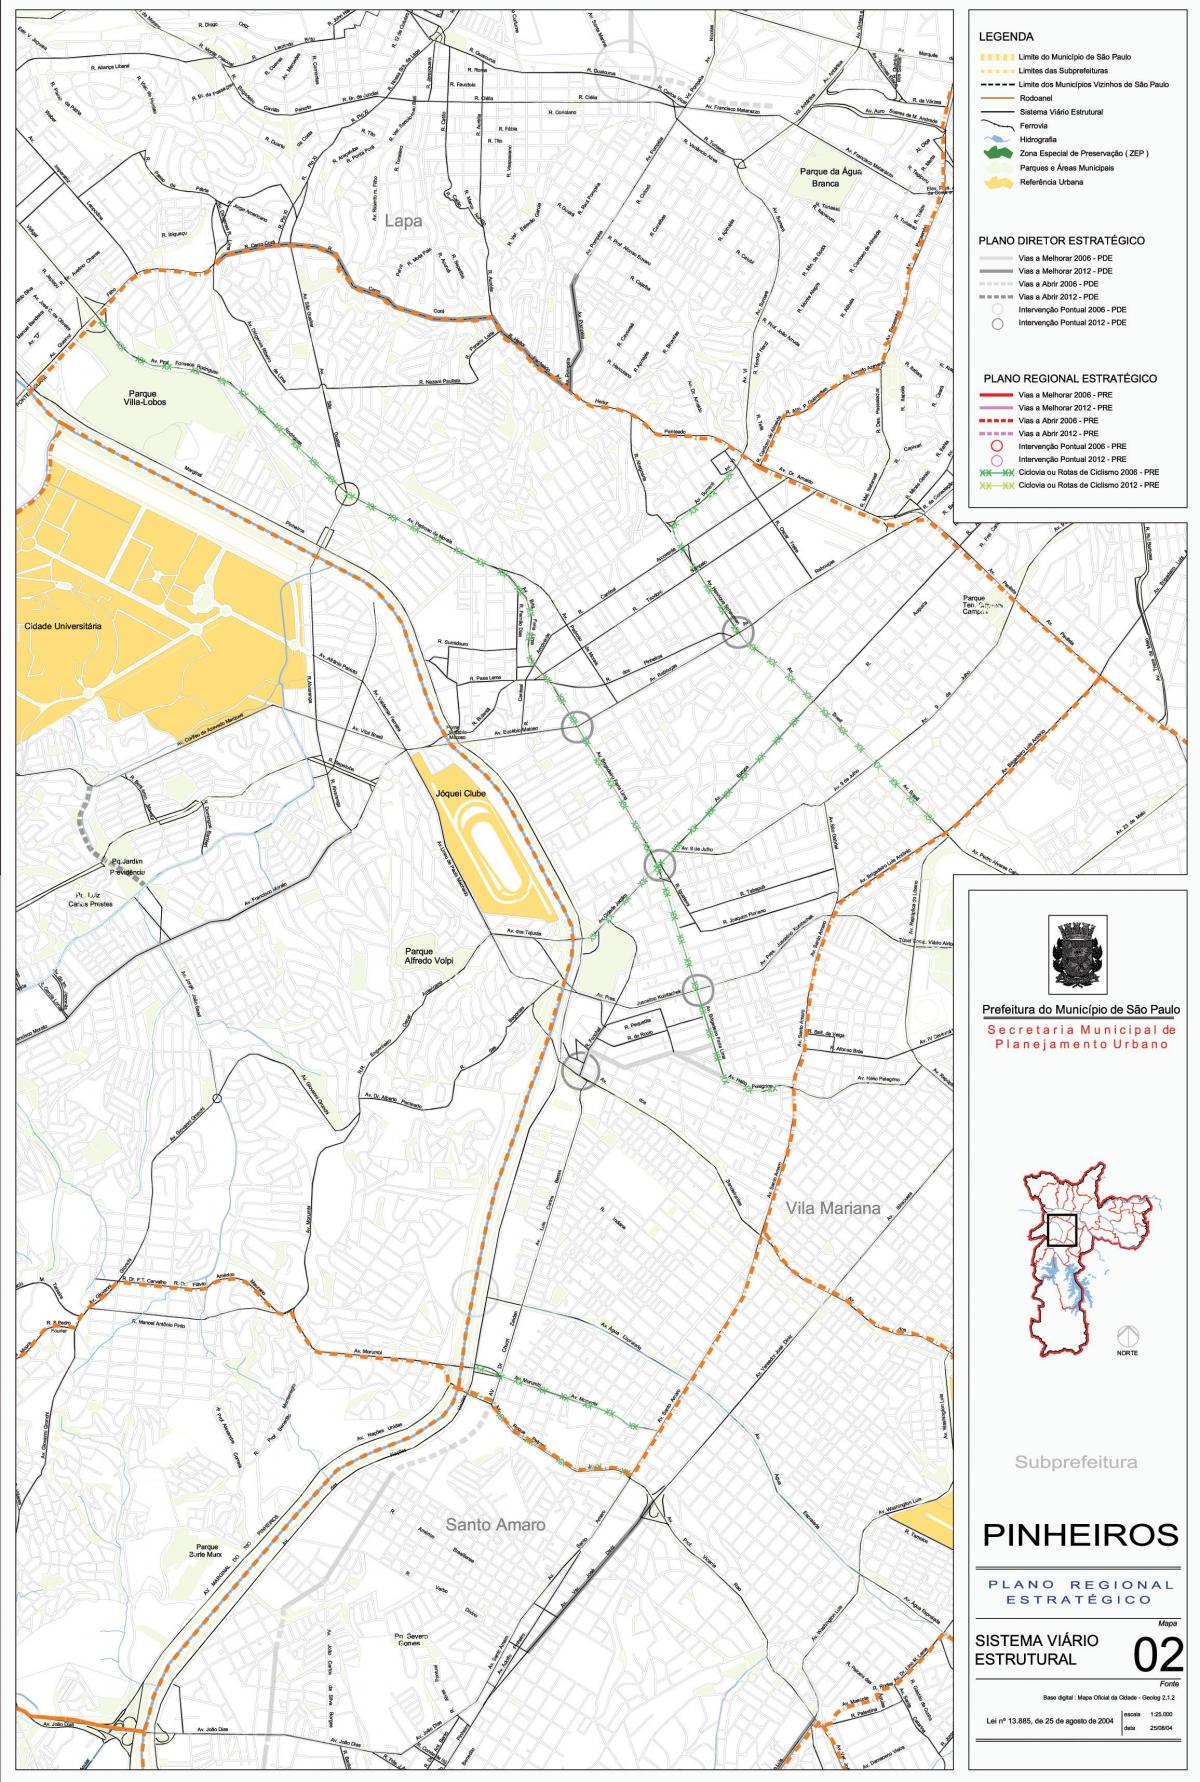 Mapa Pinheiros São Paulo - Errepideak